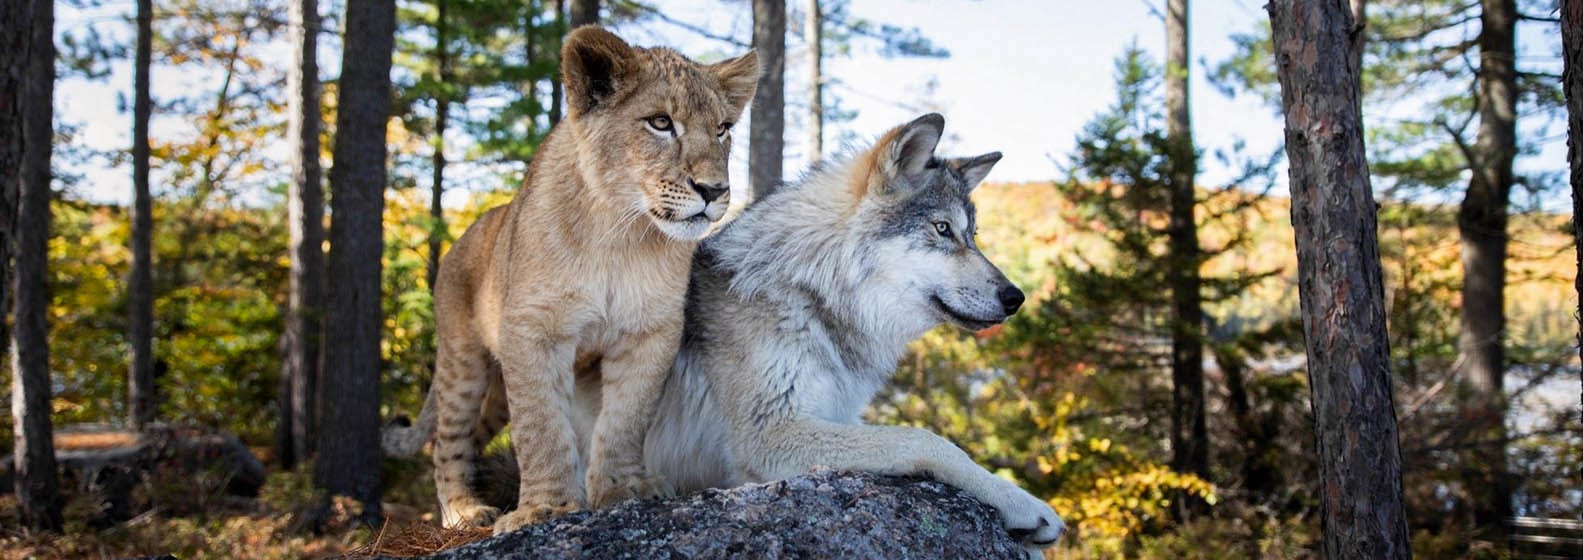 Le loup et le lion - Header Image